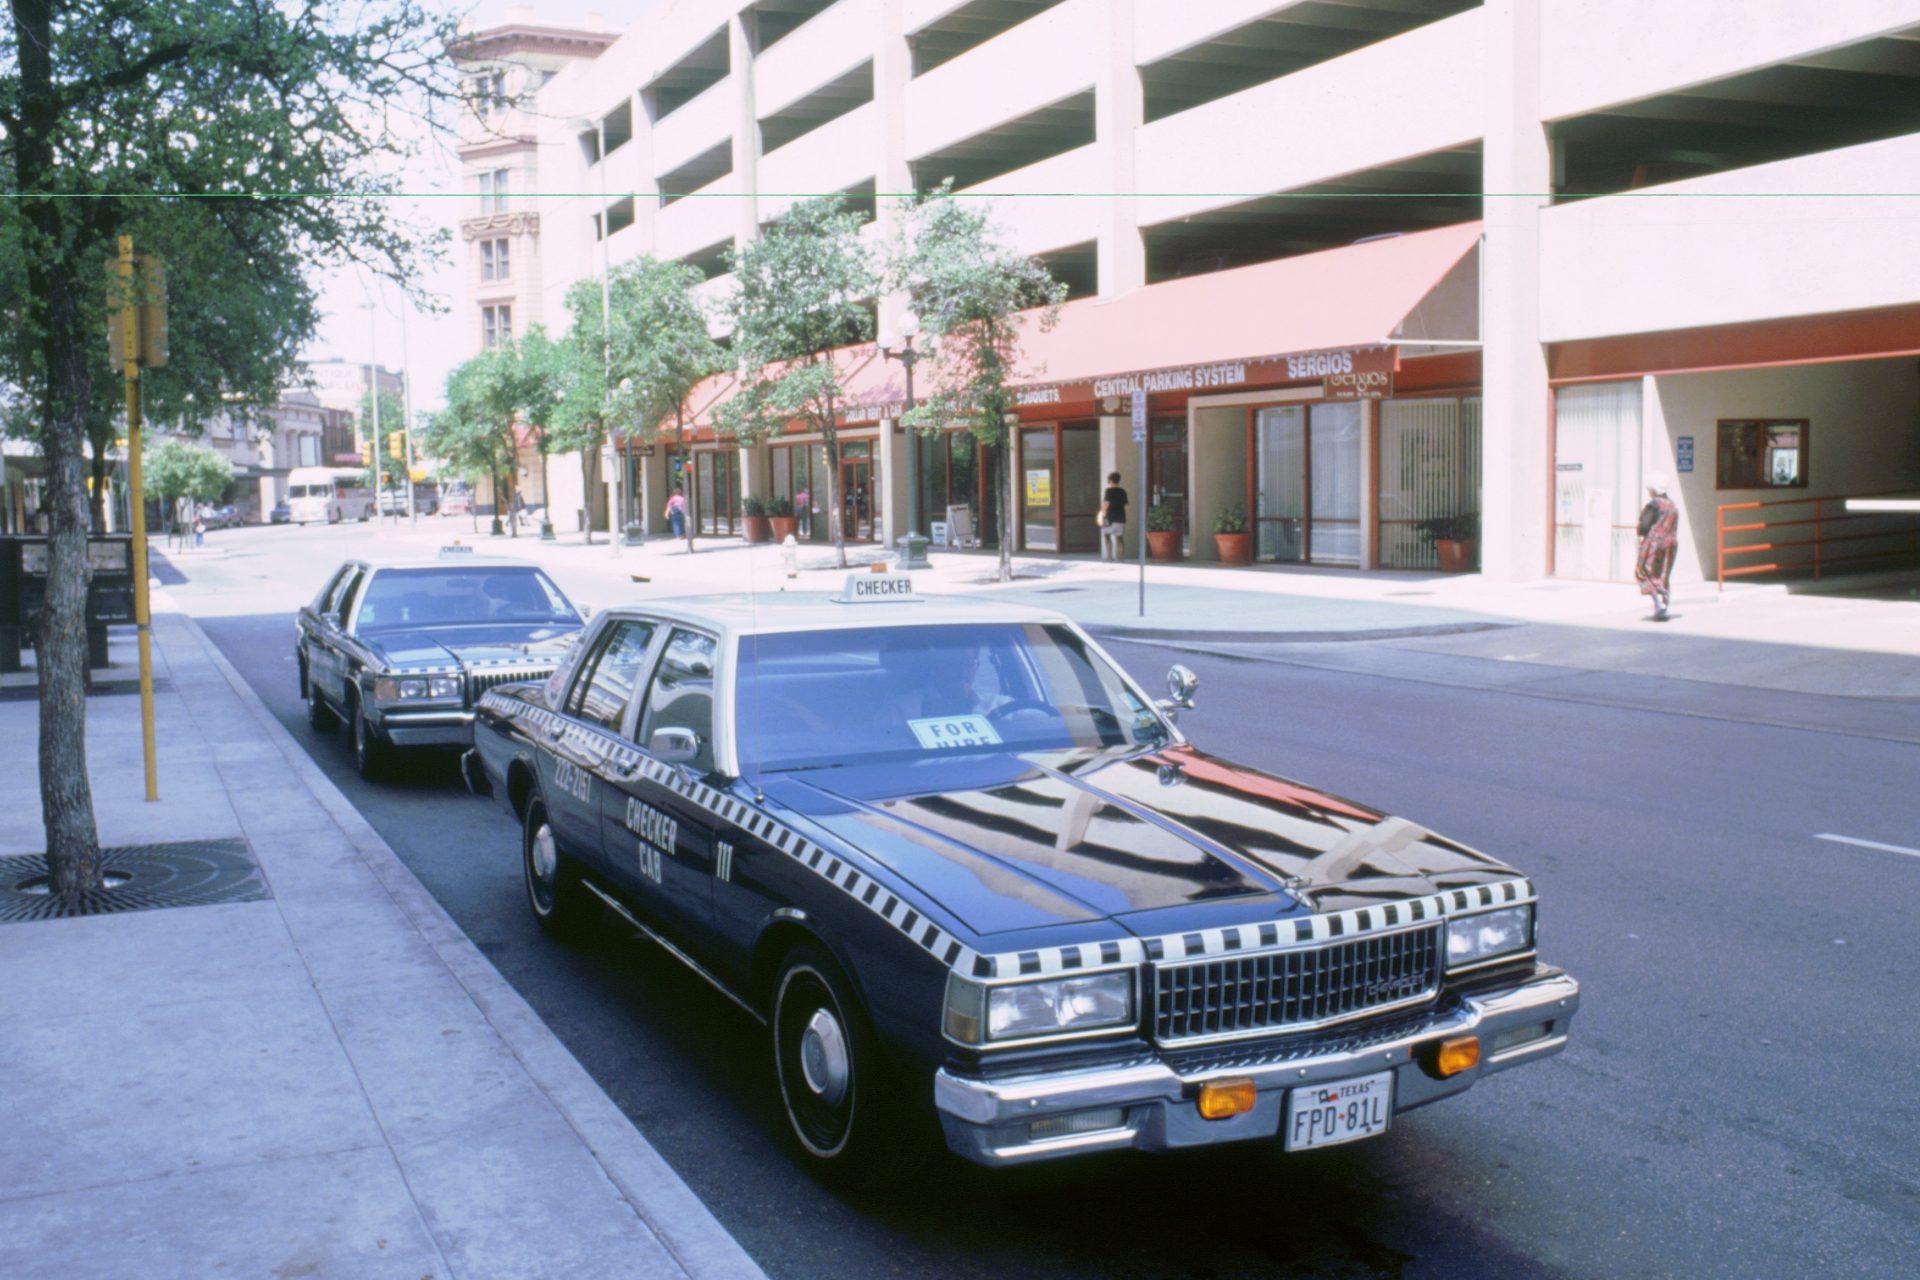 The Checker Cab Company